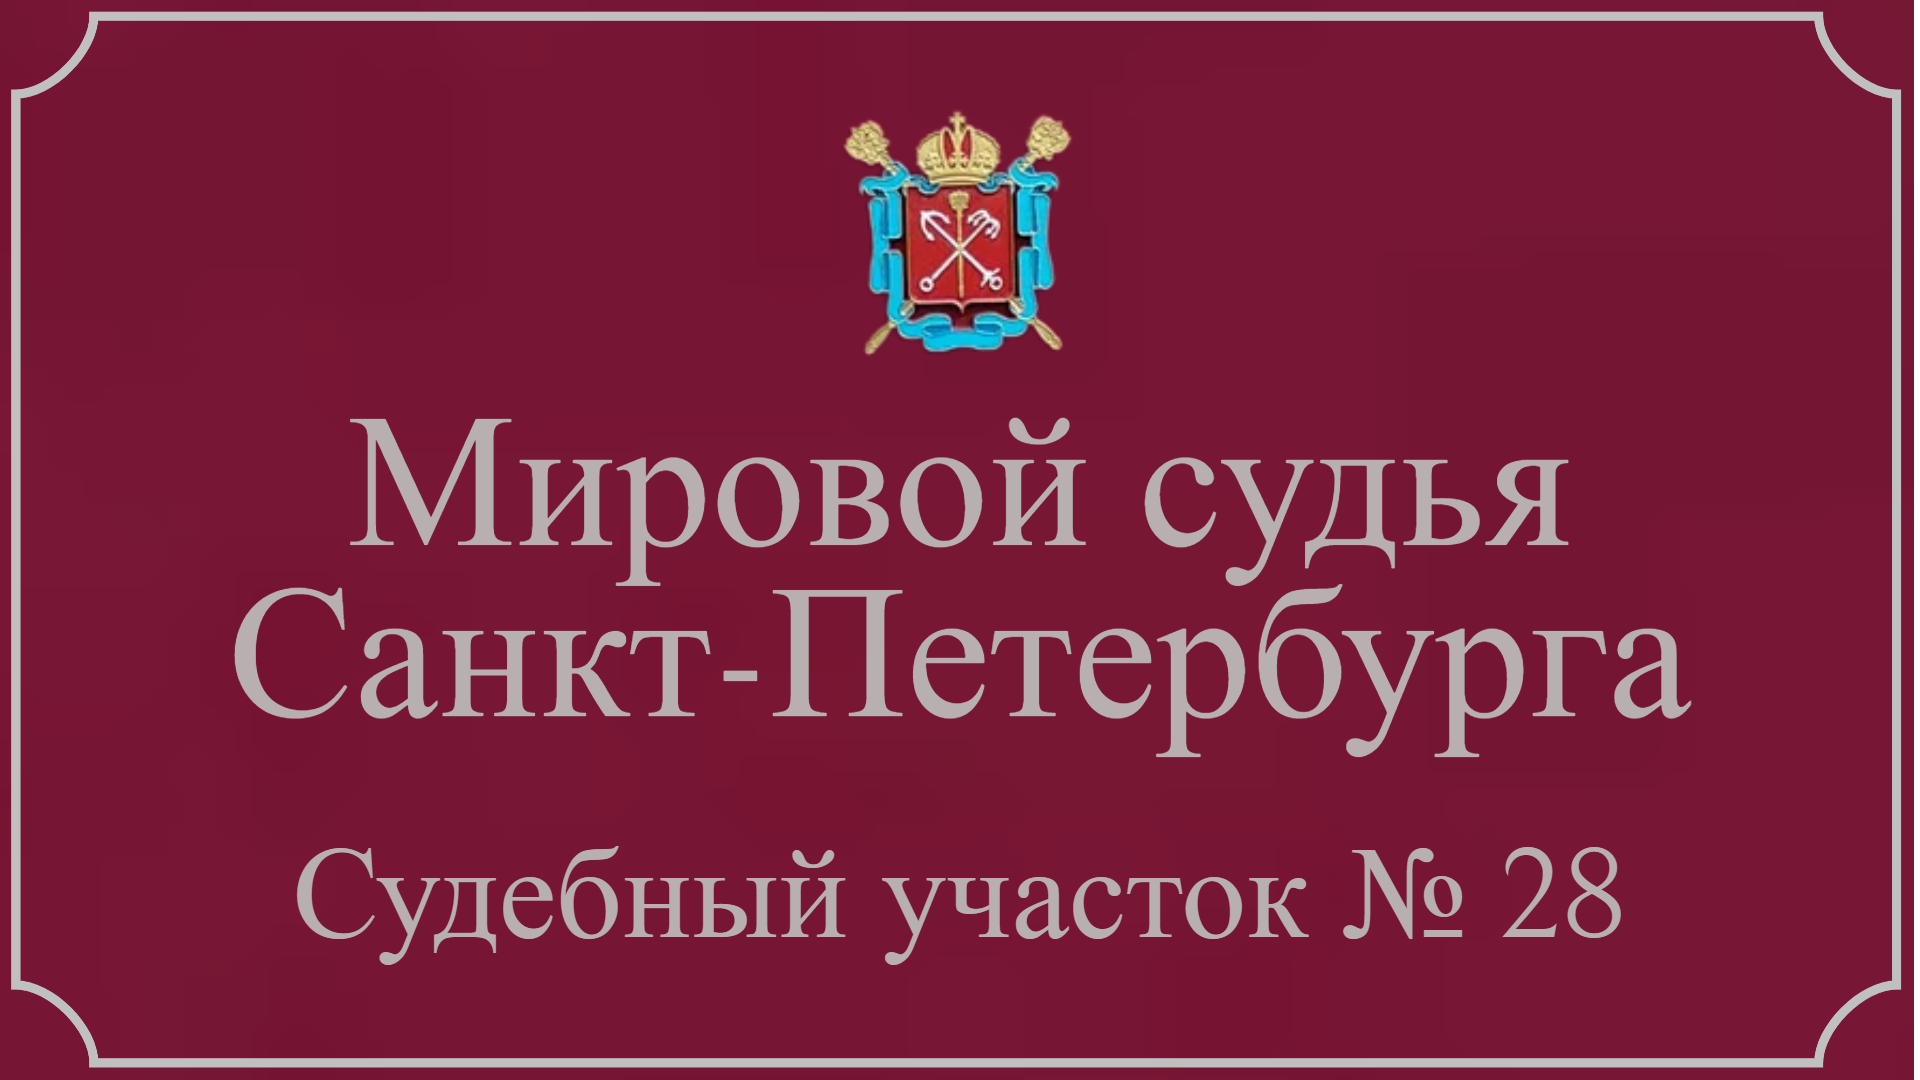 Информация по 28 судебному участку в Санкт-Петербурге.